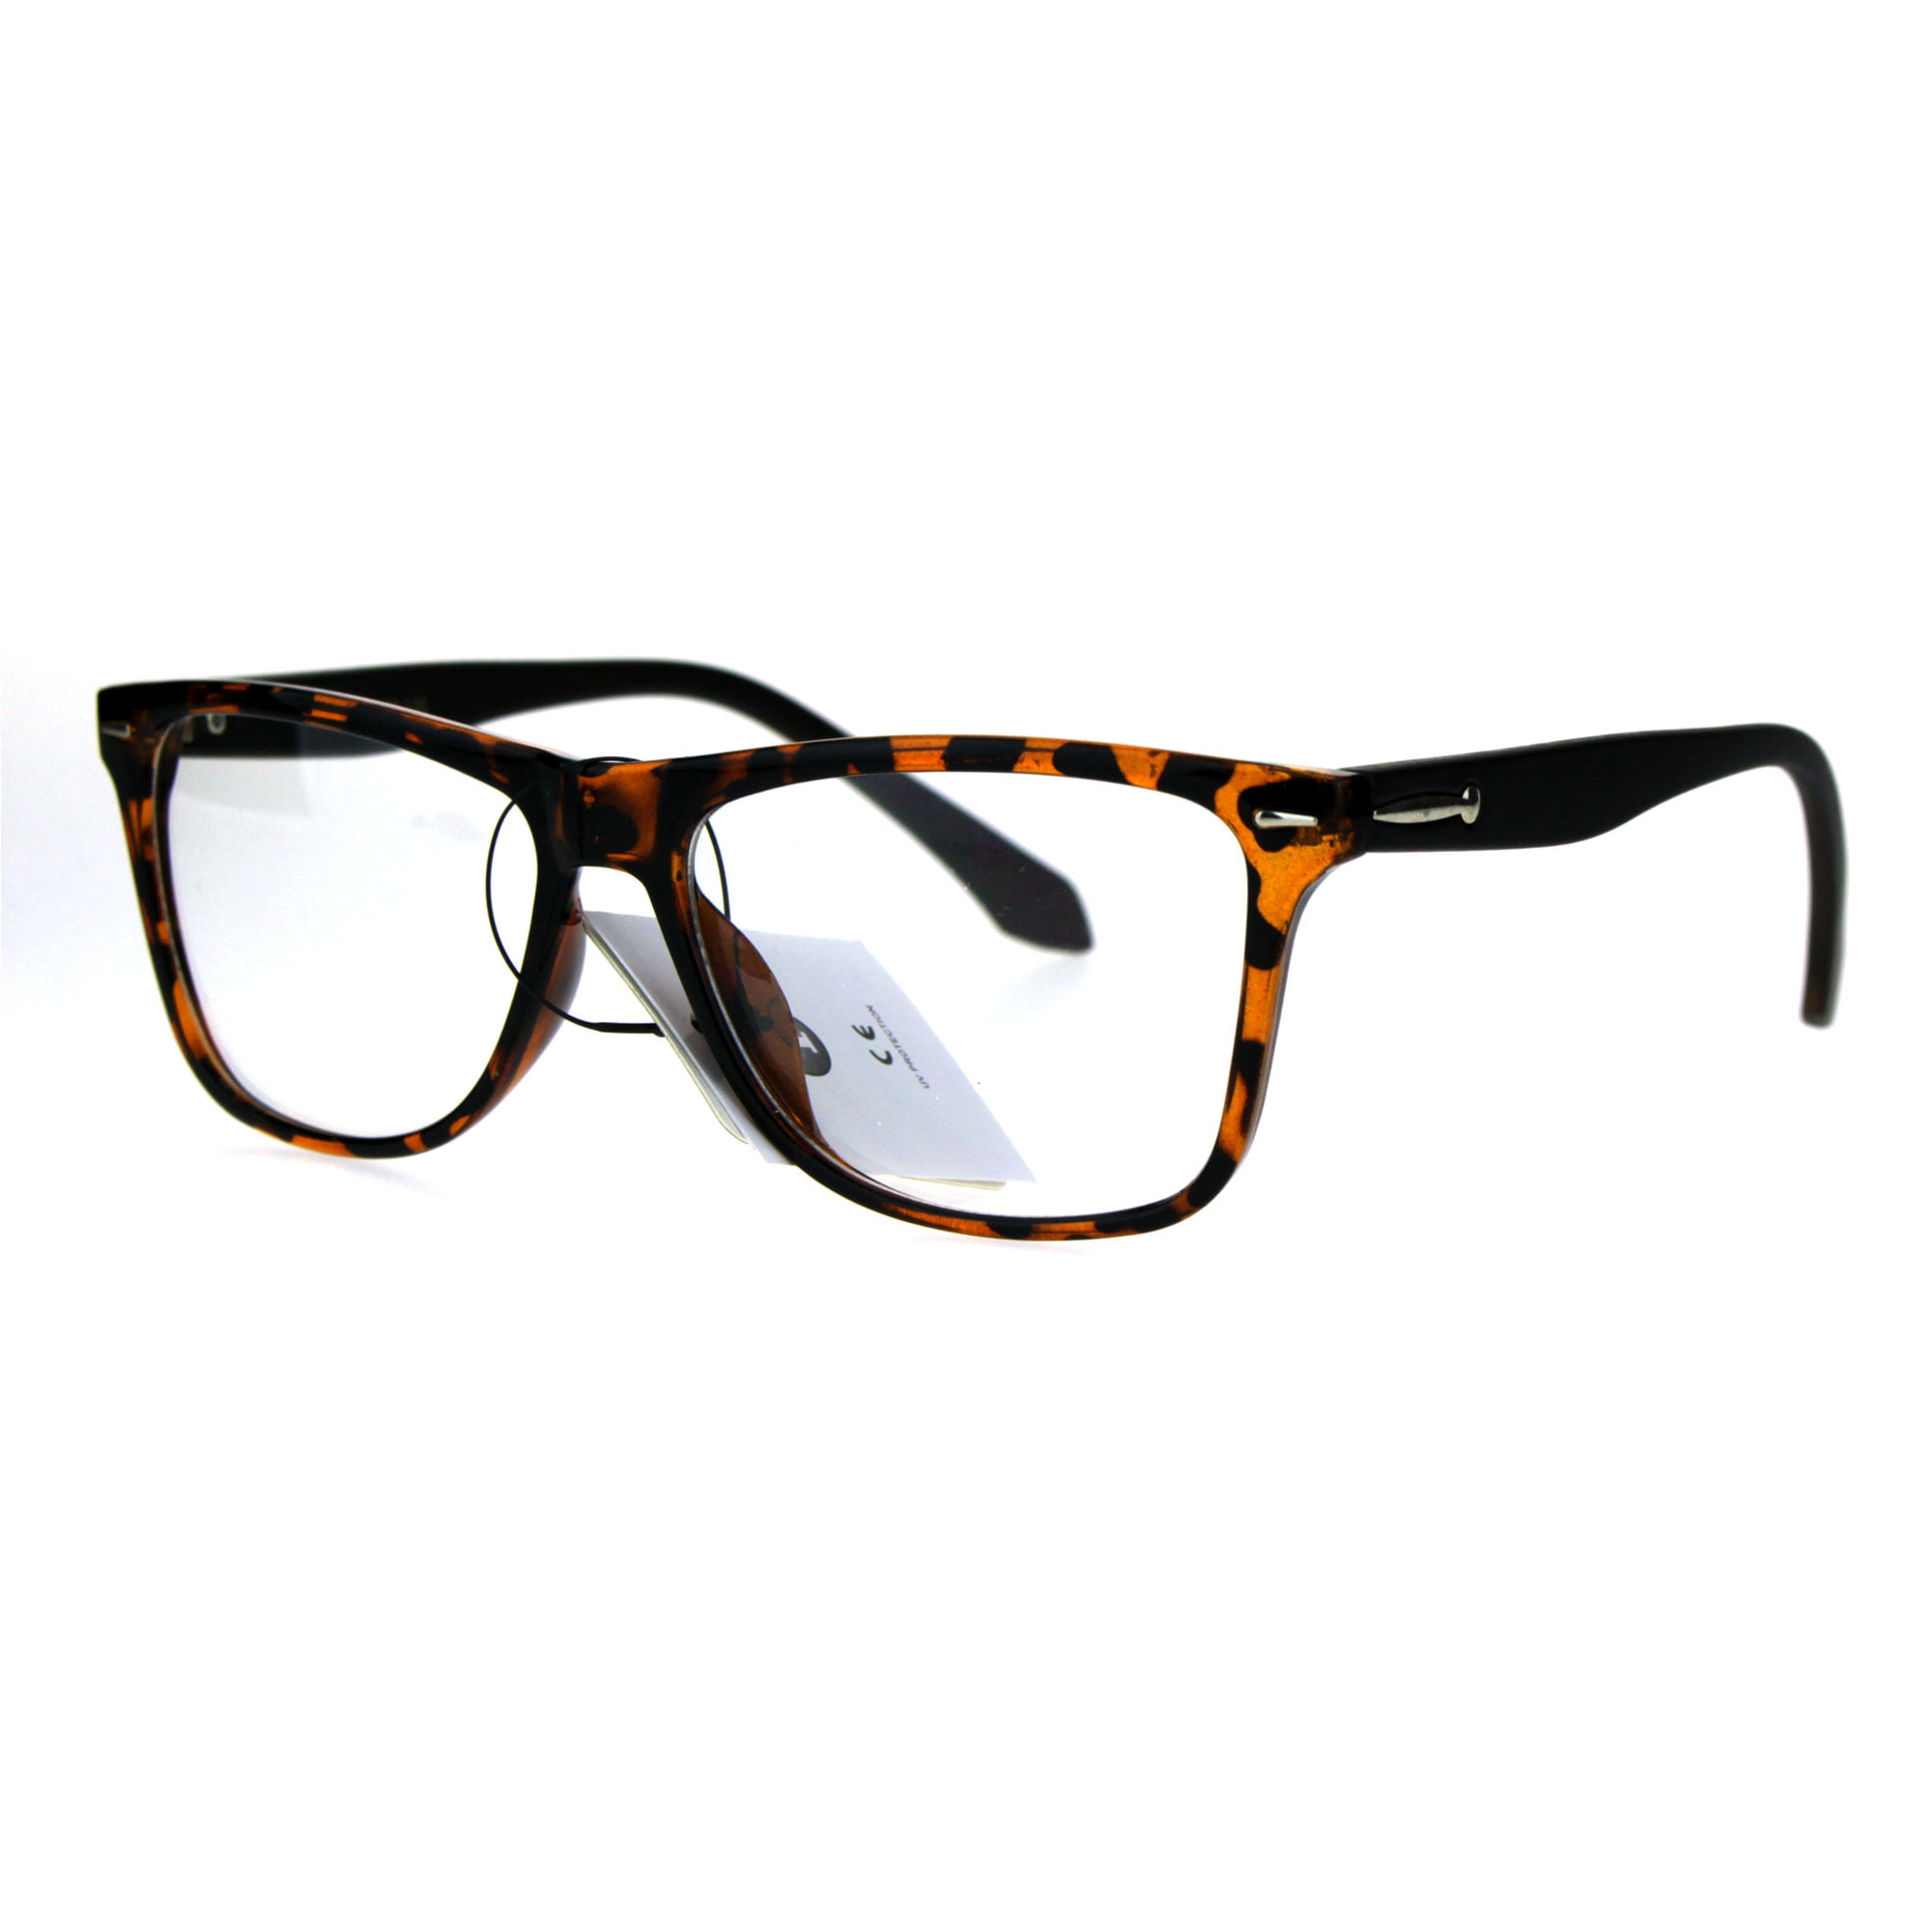 Rectangular Eyeglasses Clear Lens Glasses Frame Unisex 